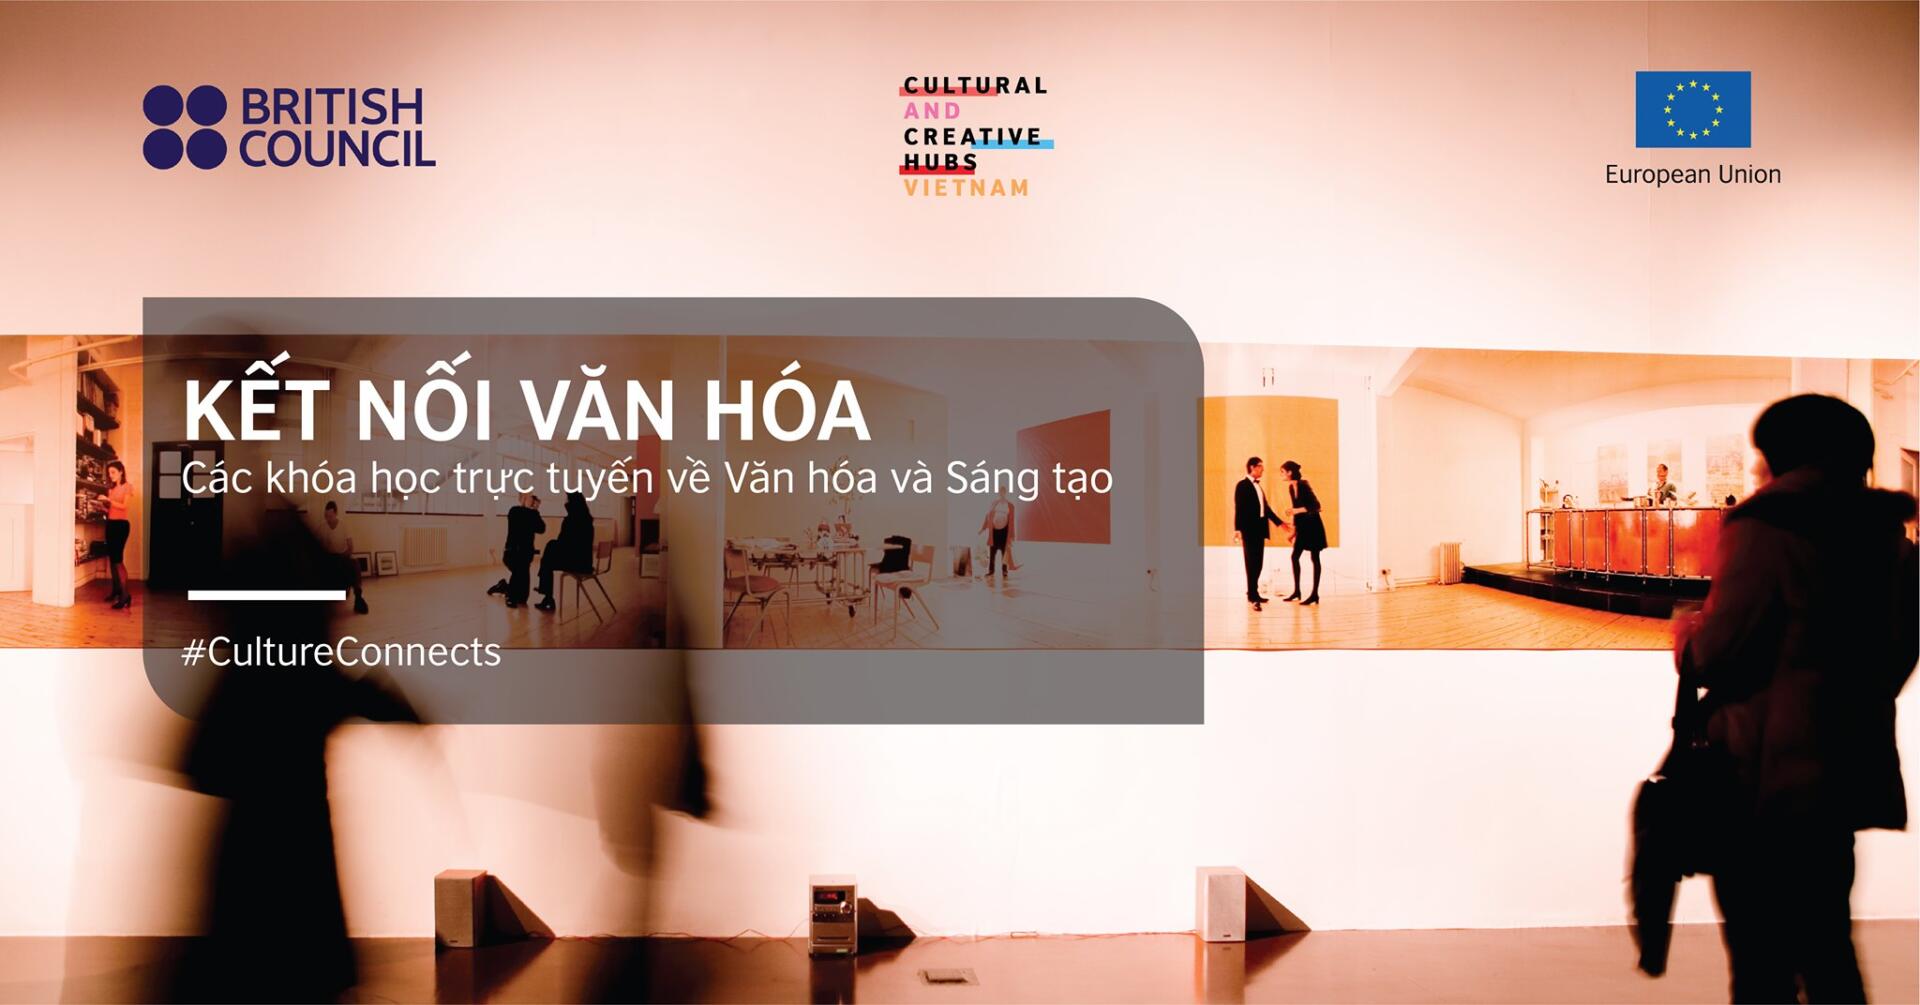 Hoạt động là một phần trong chương trình Không gian Văn hóa Sáng tạo Việt Nam, một dự án do Liên minh Châu Âu và Hội đồng Anh đồng tài trợ, và được Hội đồng Anh phối hợp với Viện Văn hóa Nghệ thuật Quốc gia Việt Nam (VICAS) thực hiện từ 2018 đến 2021.